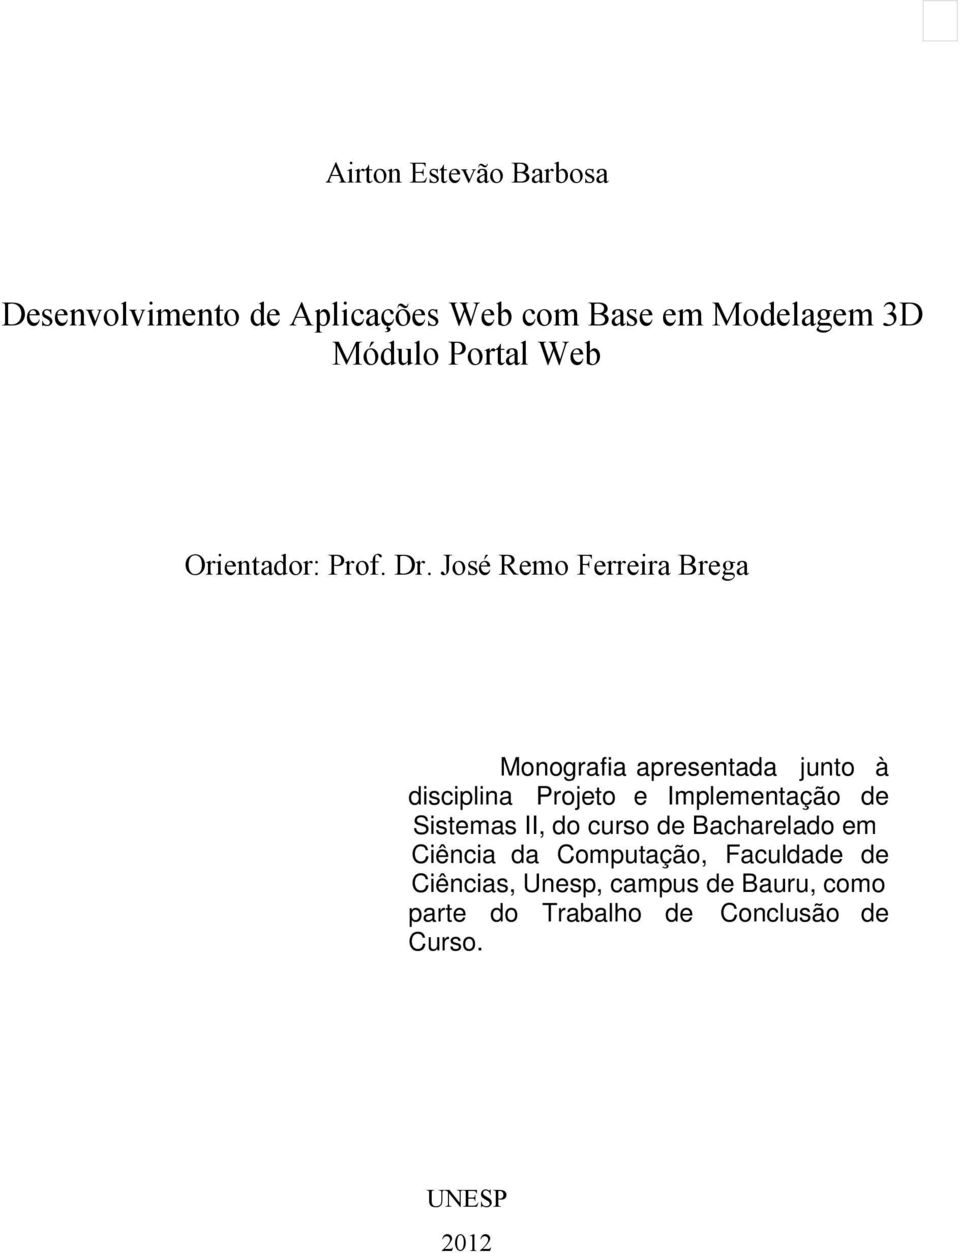 José Remo Ferreira Brega Monografia apresentada junto à disciplina Projeto e Implementação de